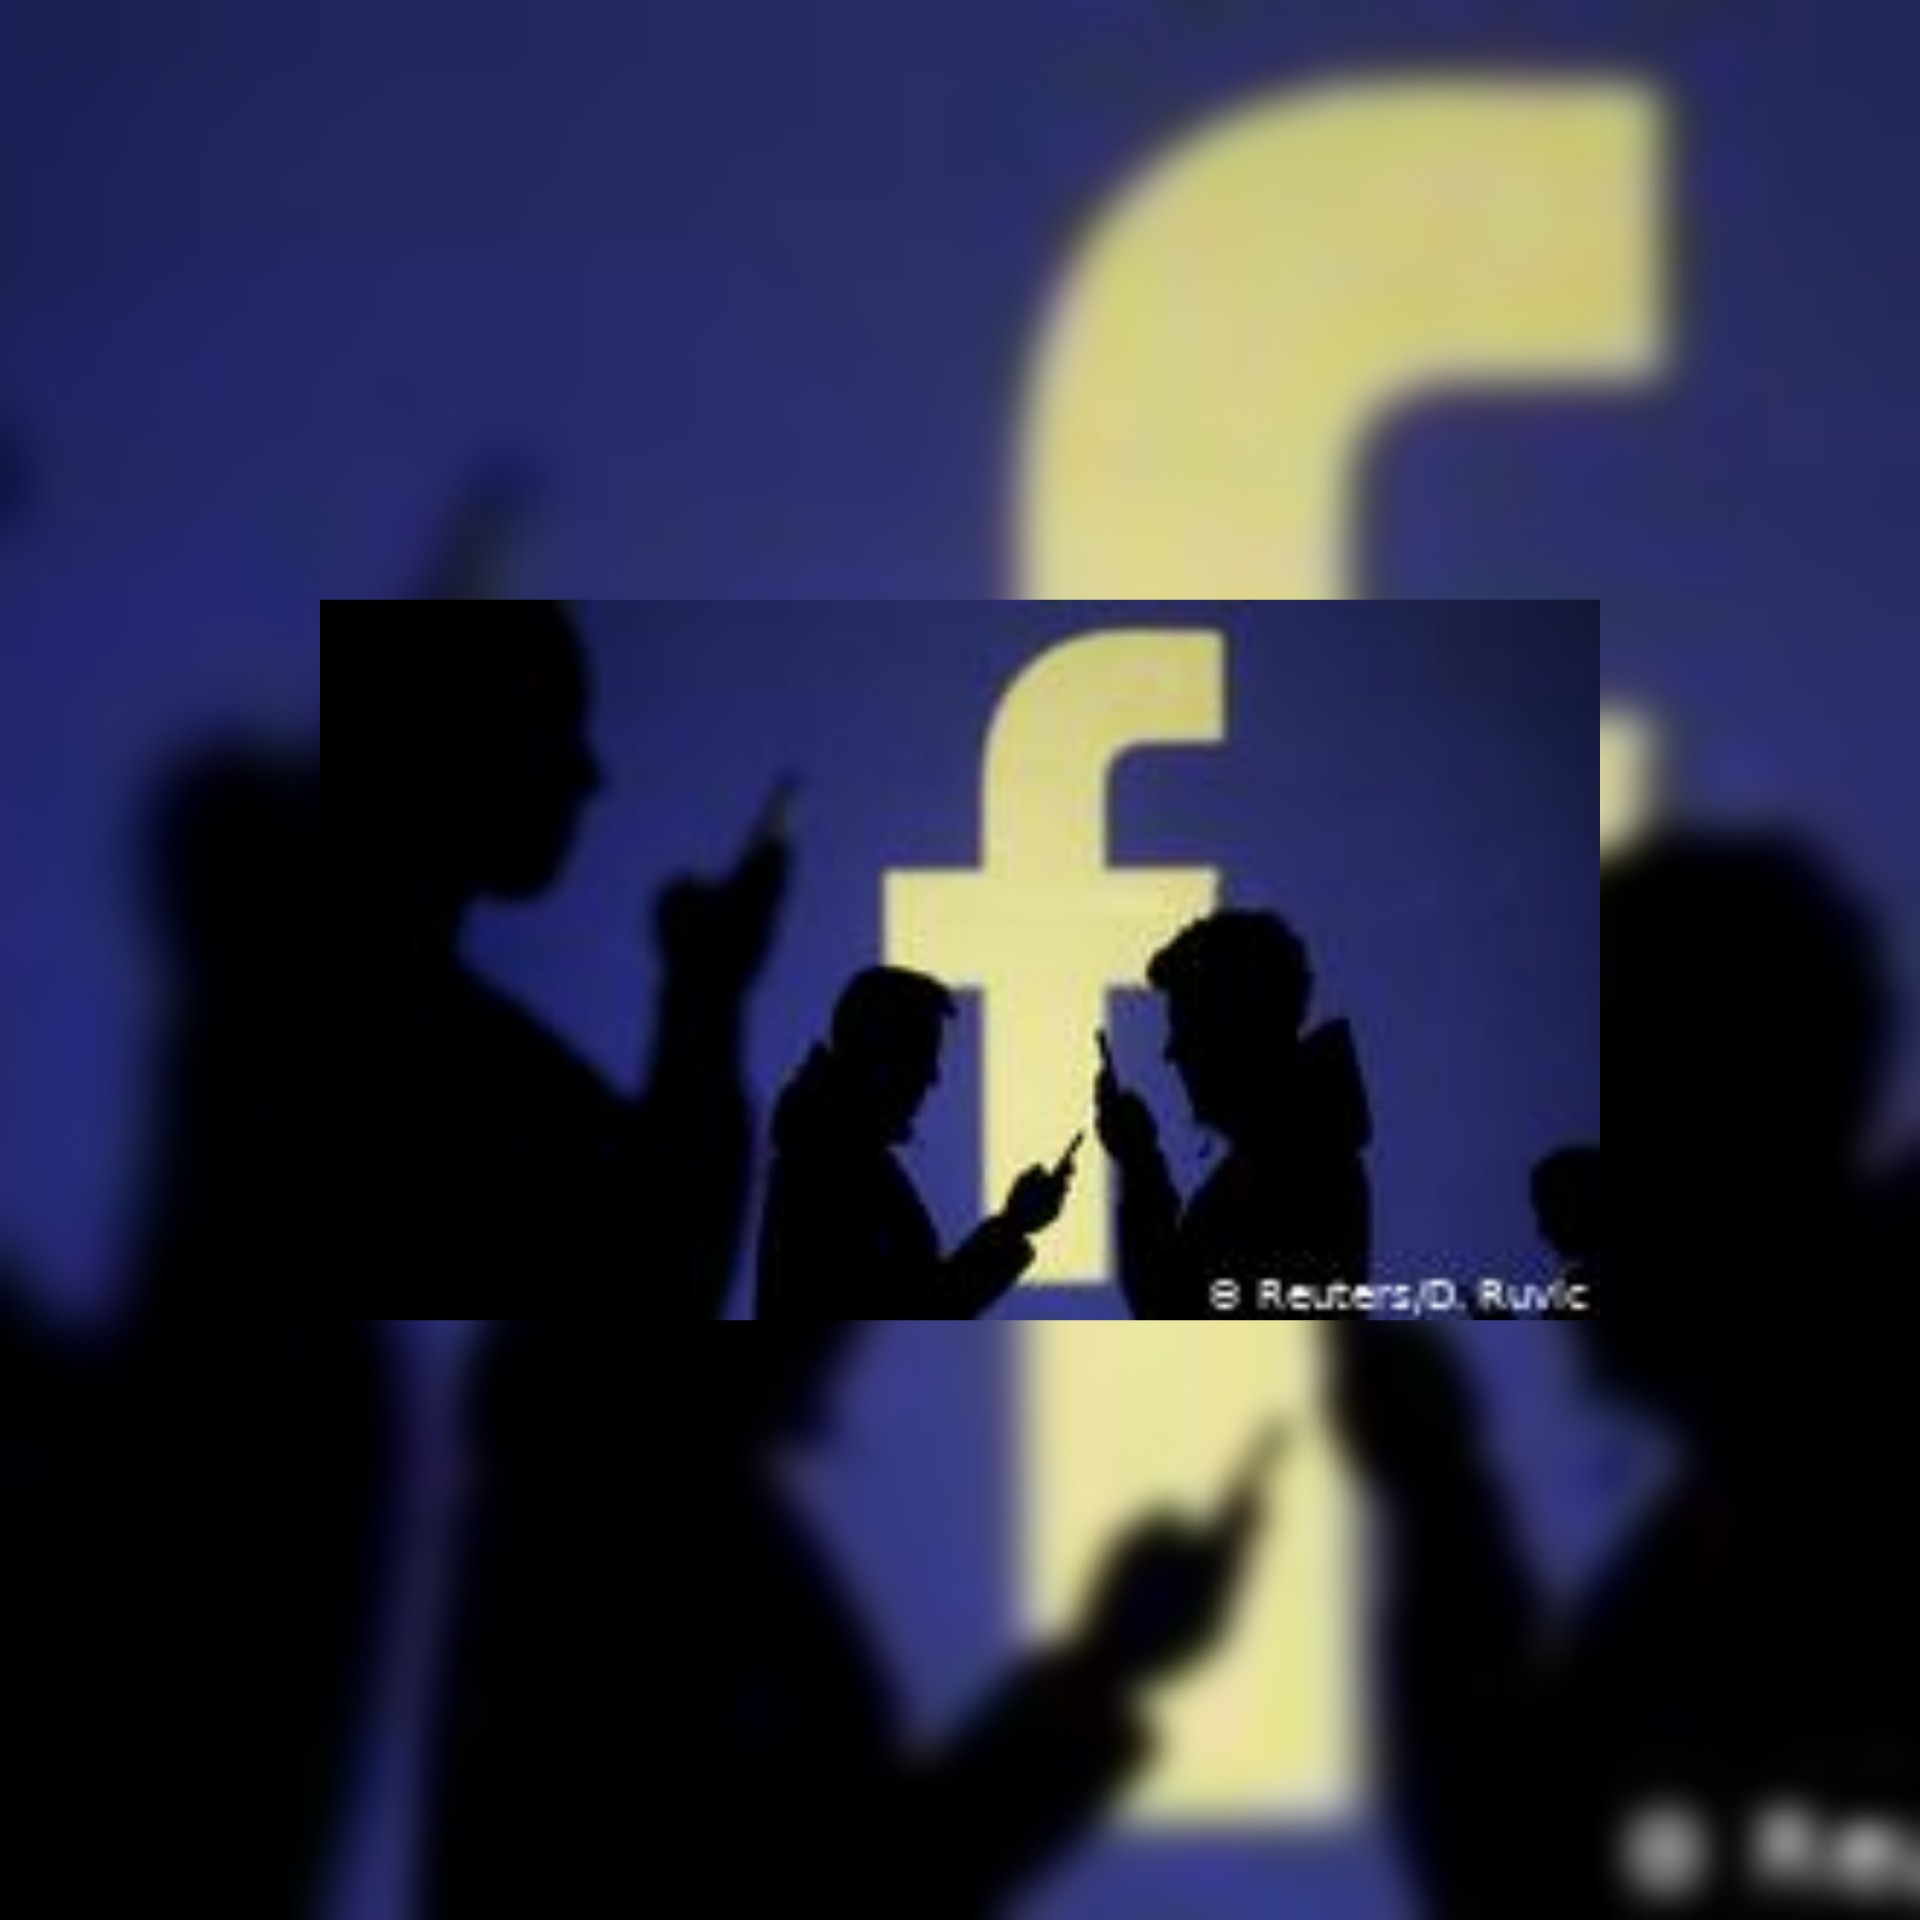 تقرير: تسريب بيانات أكثر من نصف مليار حساب فيسبوك